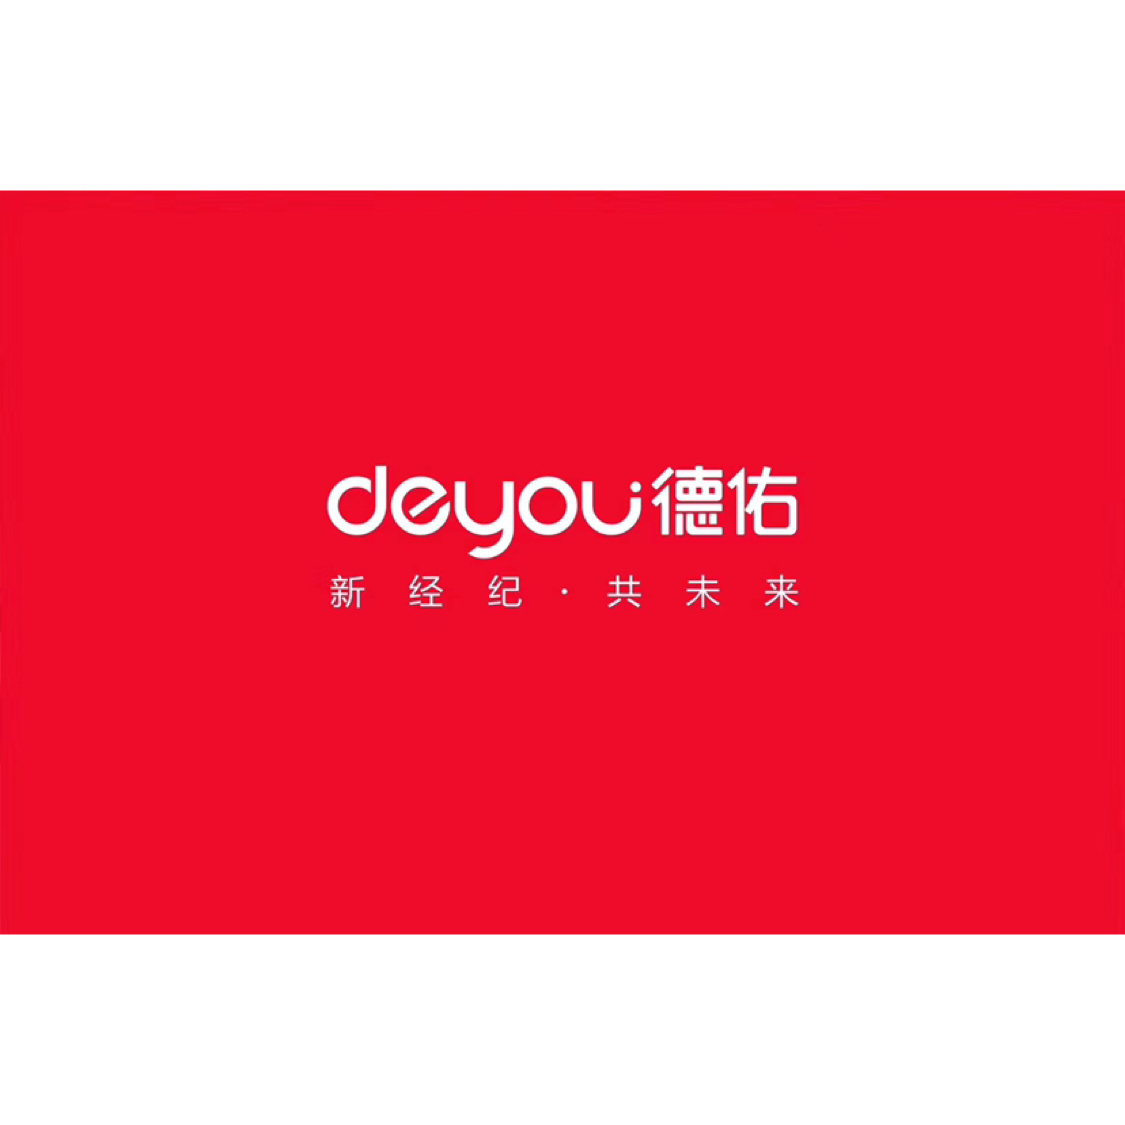 公司期待优秀的你加入德佑地产2002年创立于上海,从高端房产服务起步